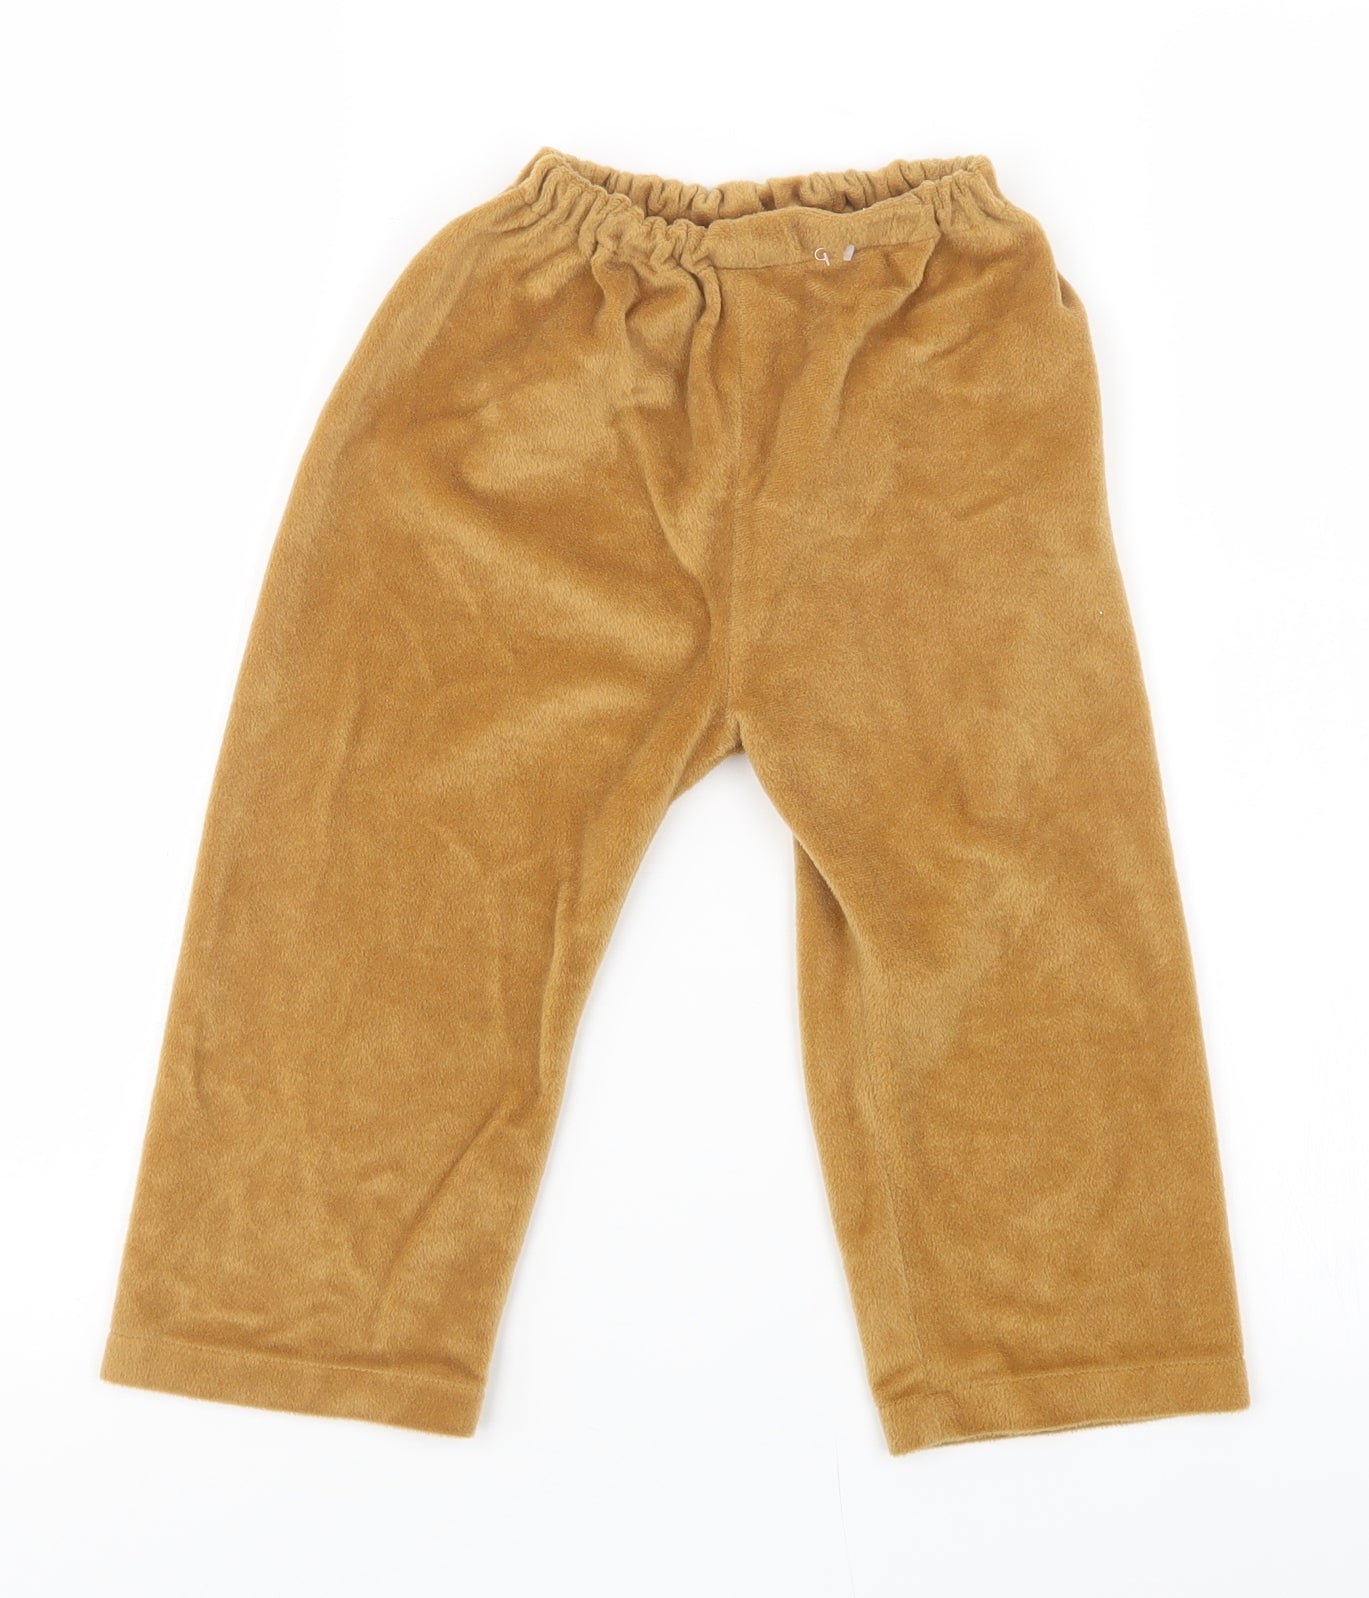 TU Boys Brown Solid Fleece  Pyjama Pants Size 2-3 Years